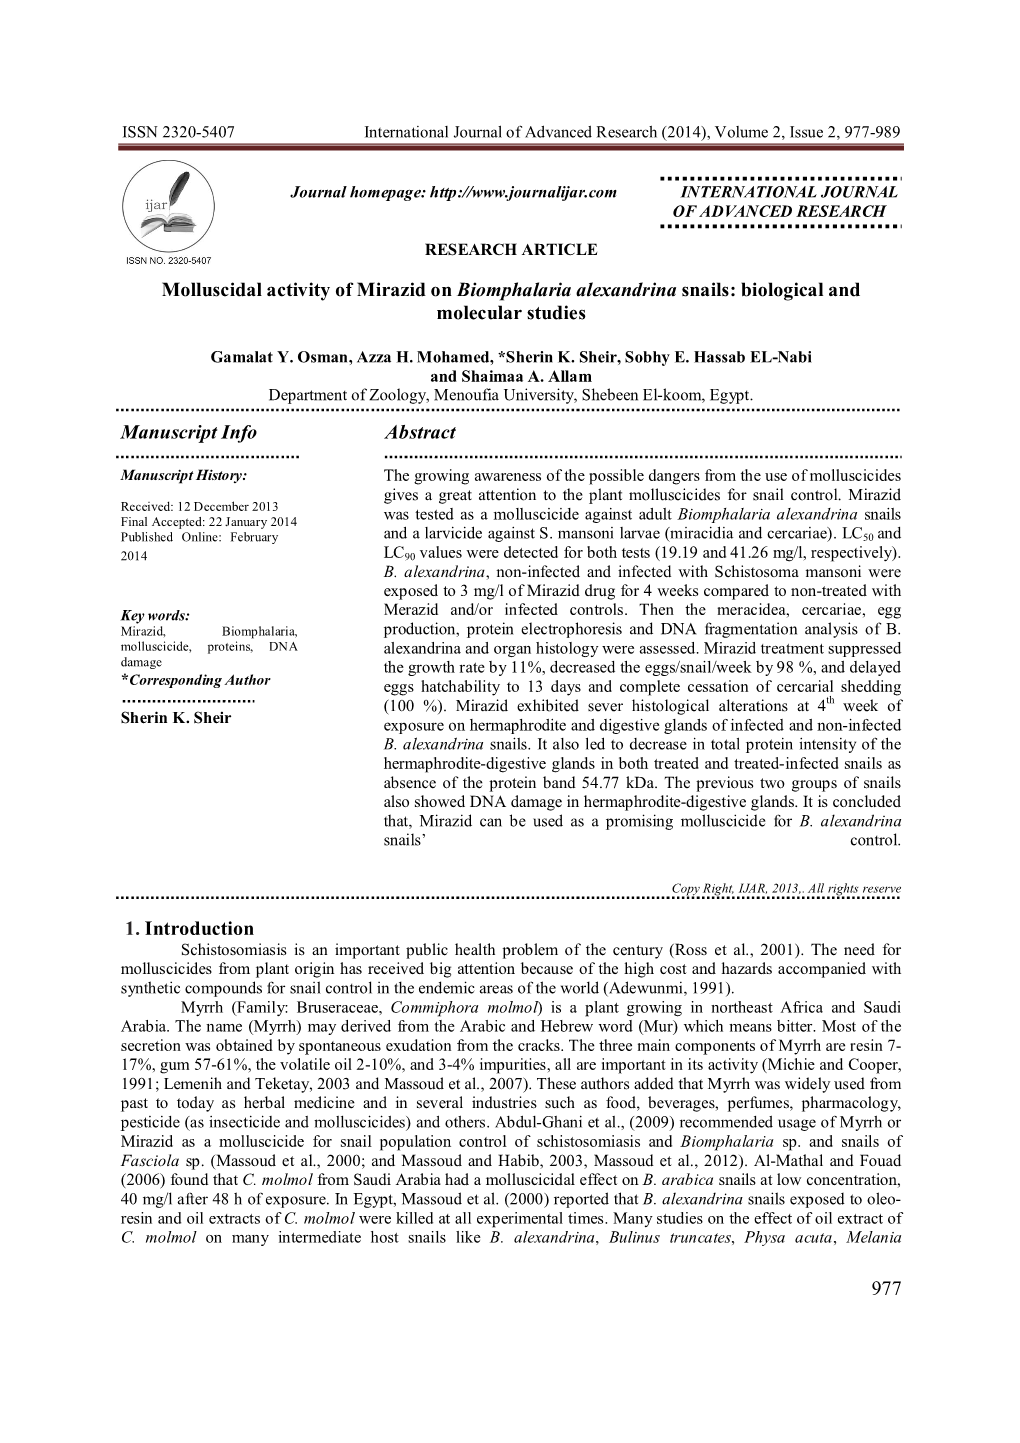 Biomphalaria Alexandrina Snails: Biological and Molecular Studies